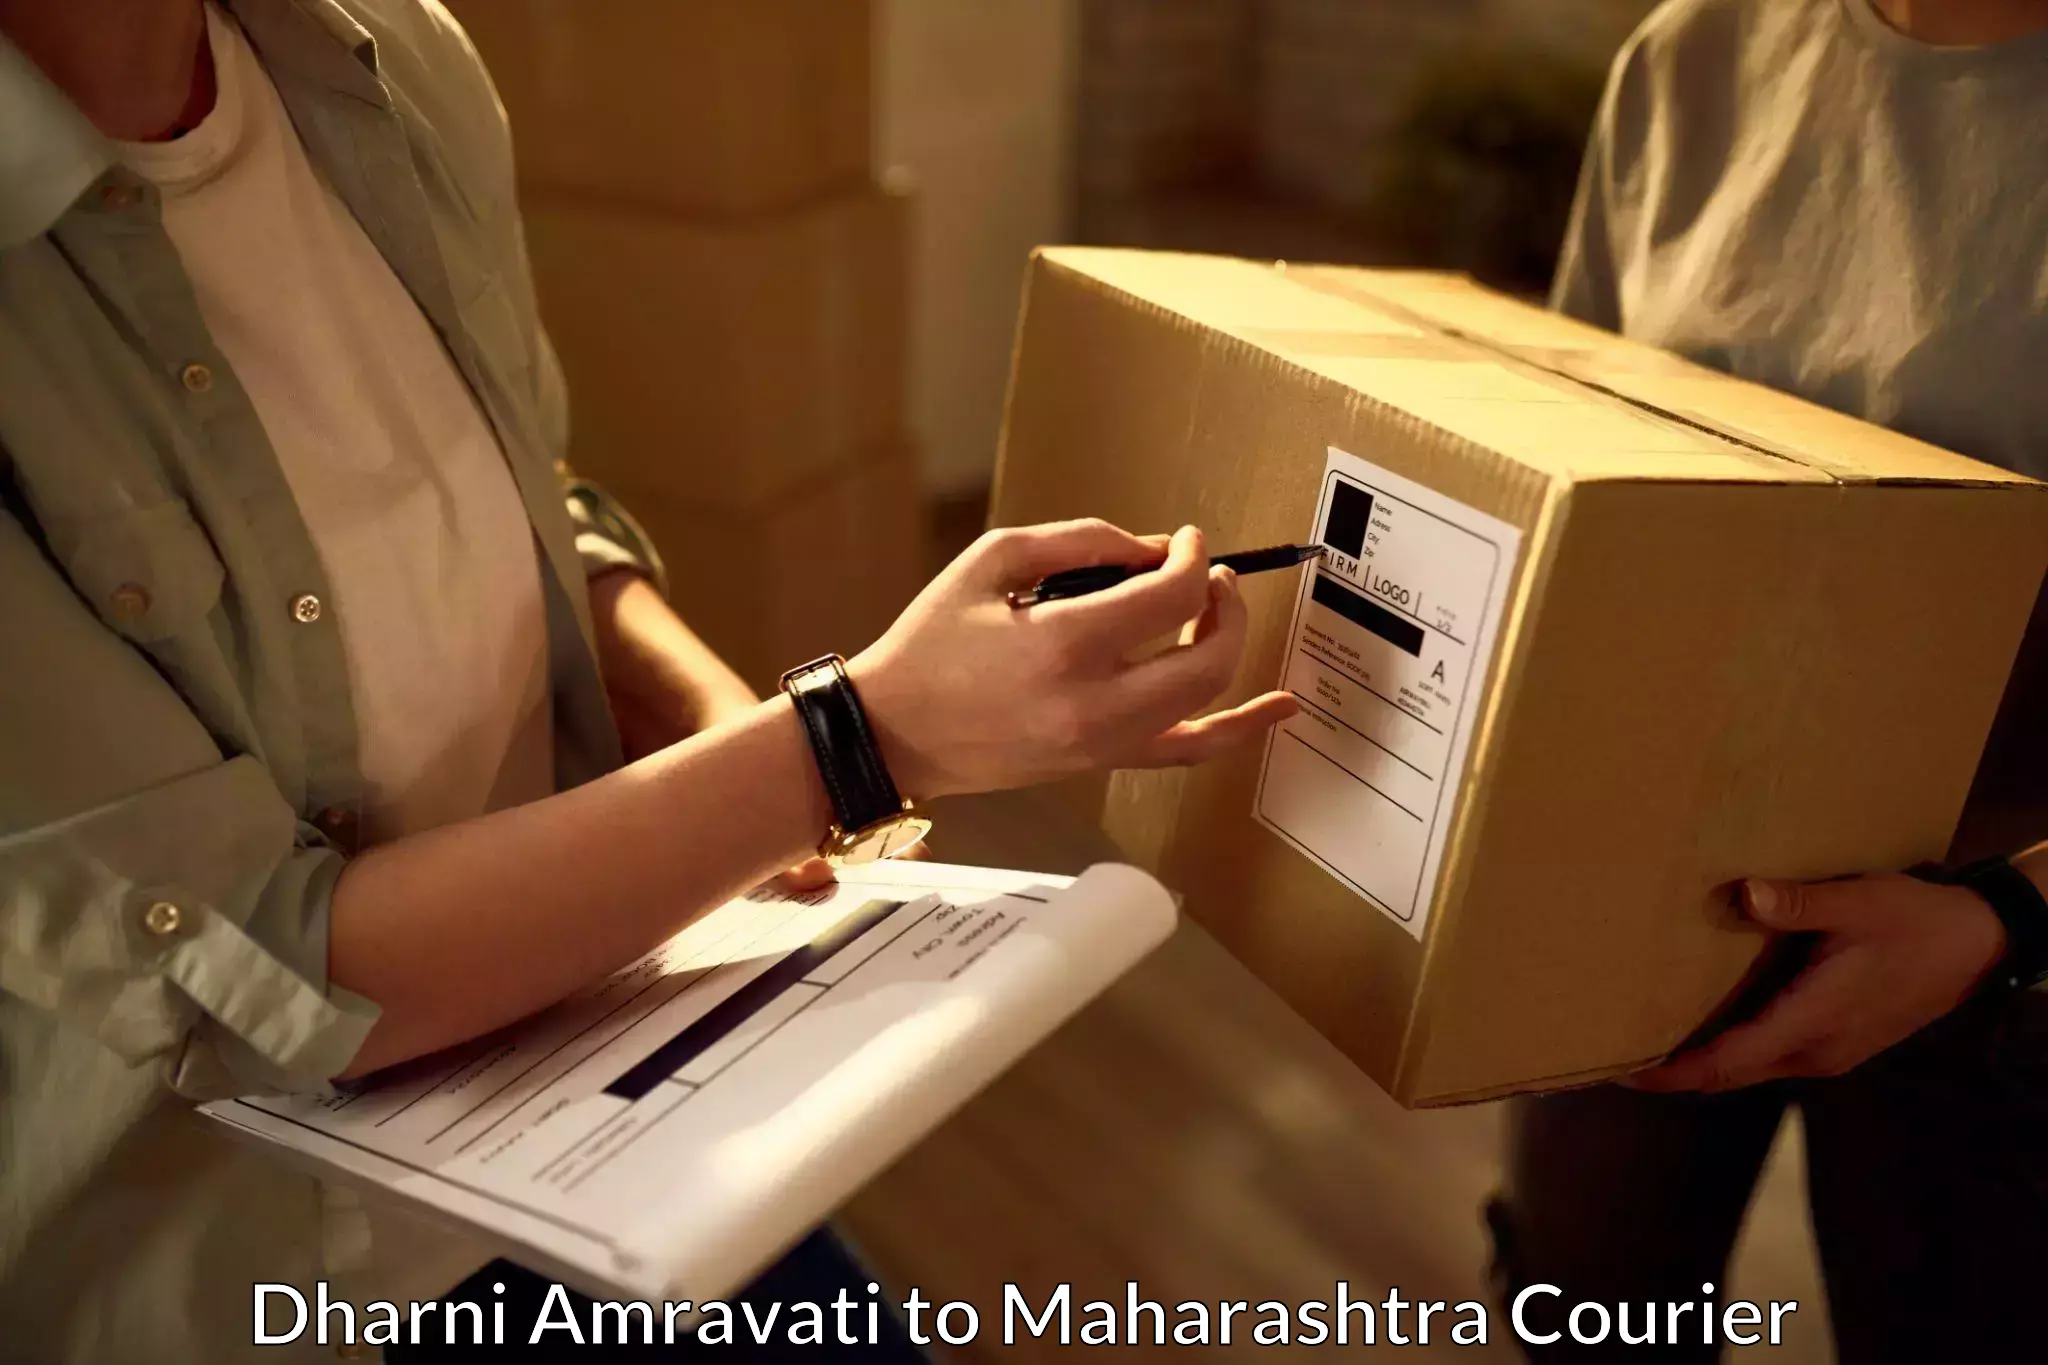 Logistics service provider Dharni Amravati to Maharashtra